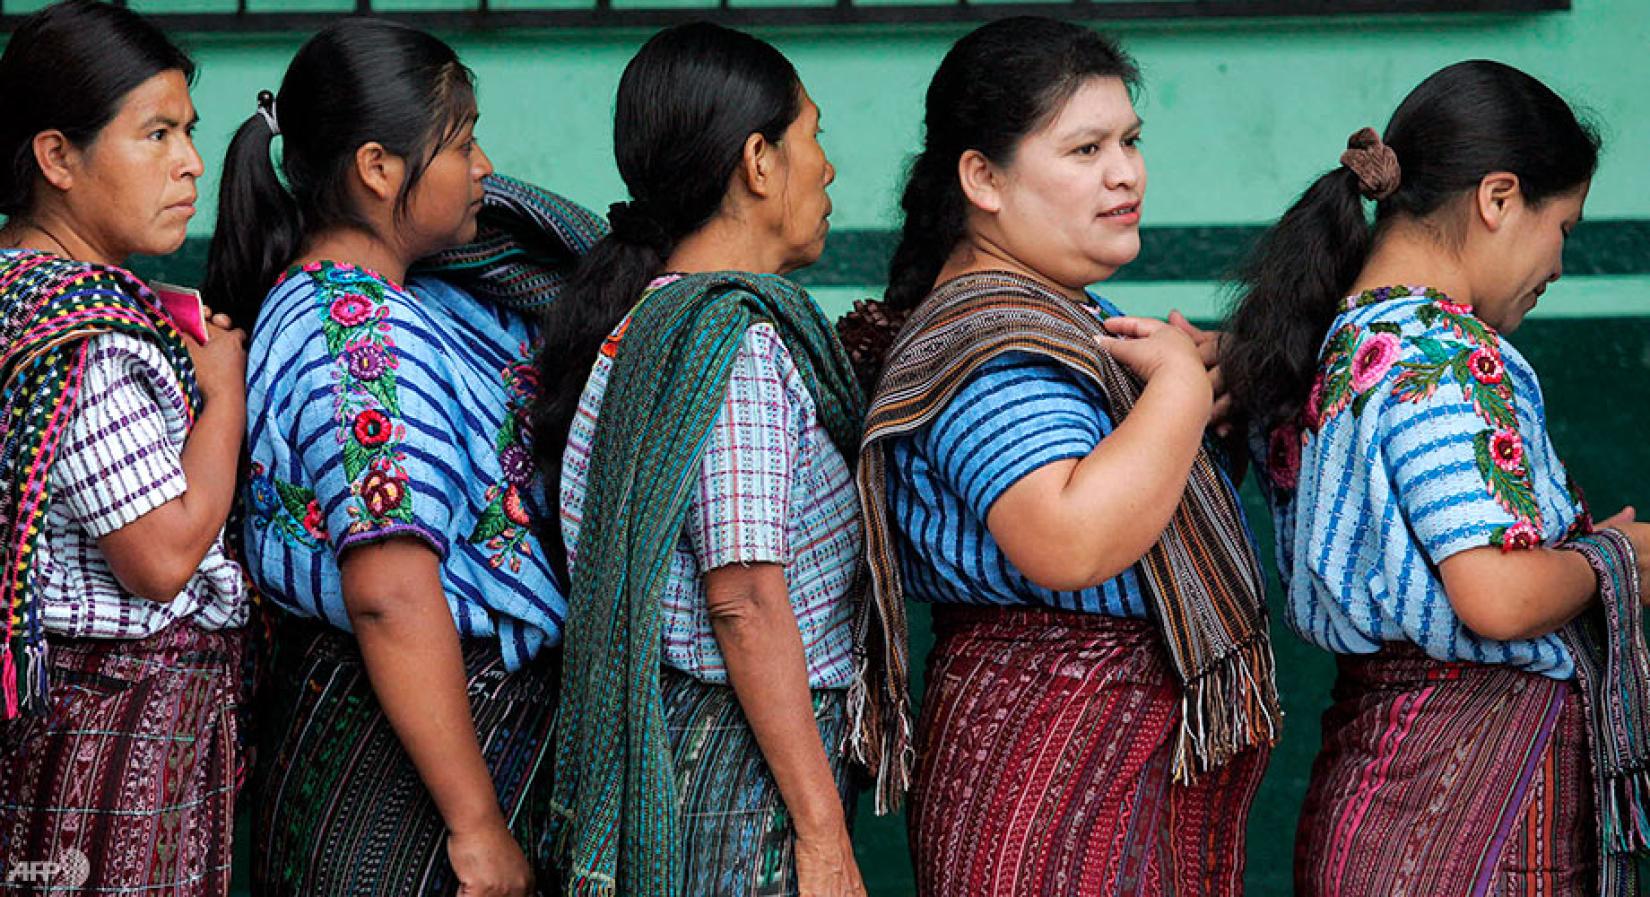 Mulheres e meninas indígenas são desproporcionalmente afetadas pela violência baseada em gênero.